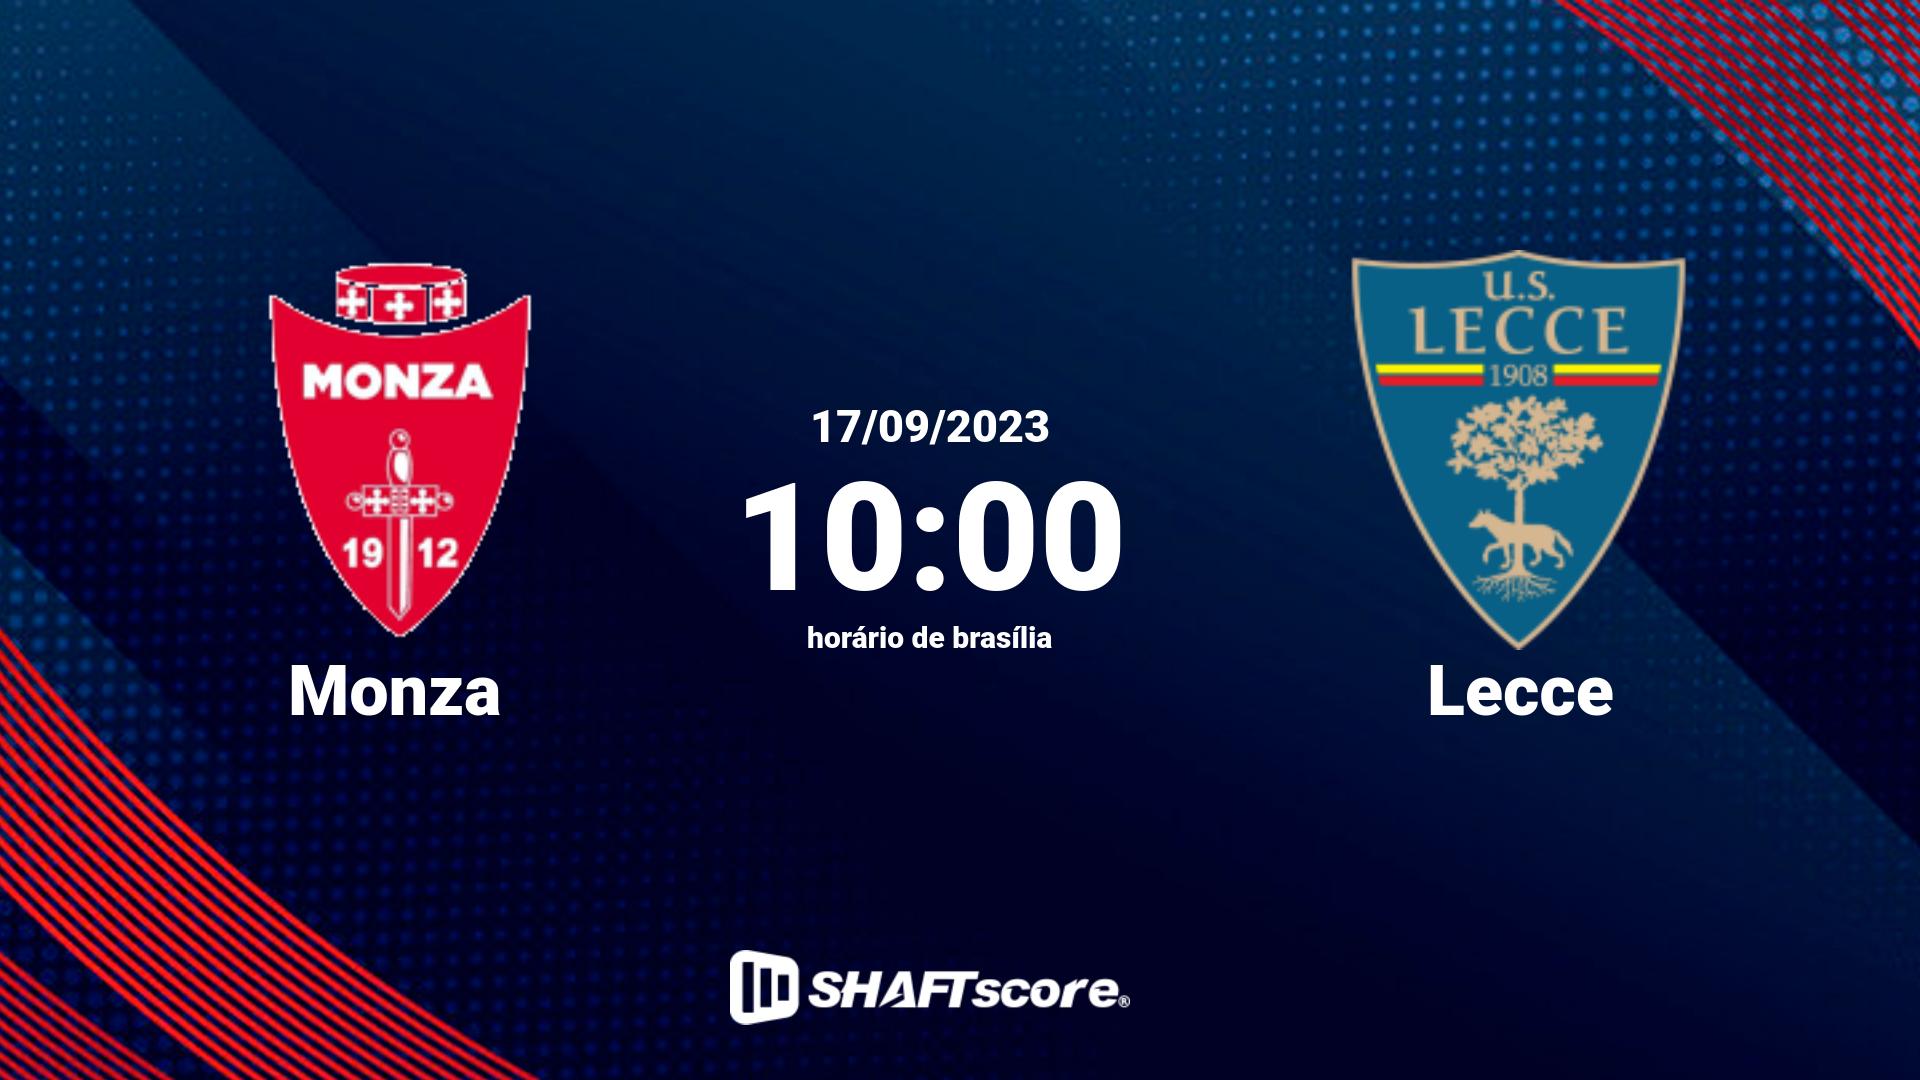 Estatísticas do jogo Monza vs Lecce 17.09 10:00